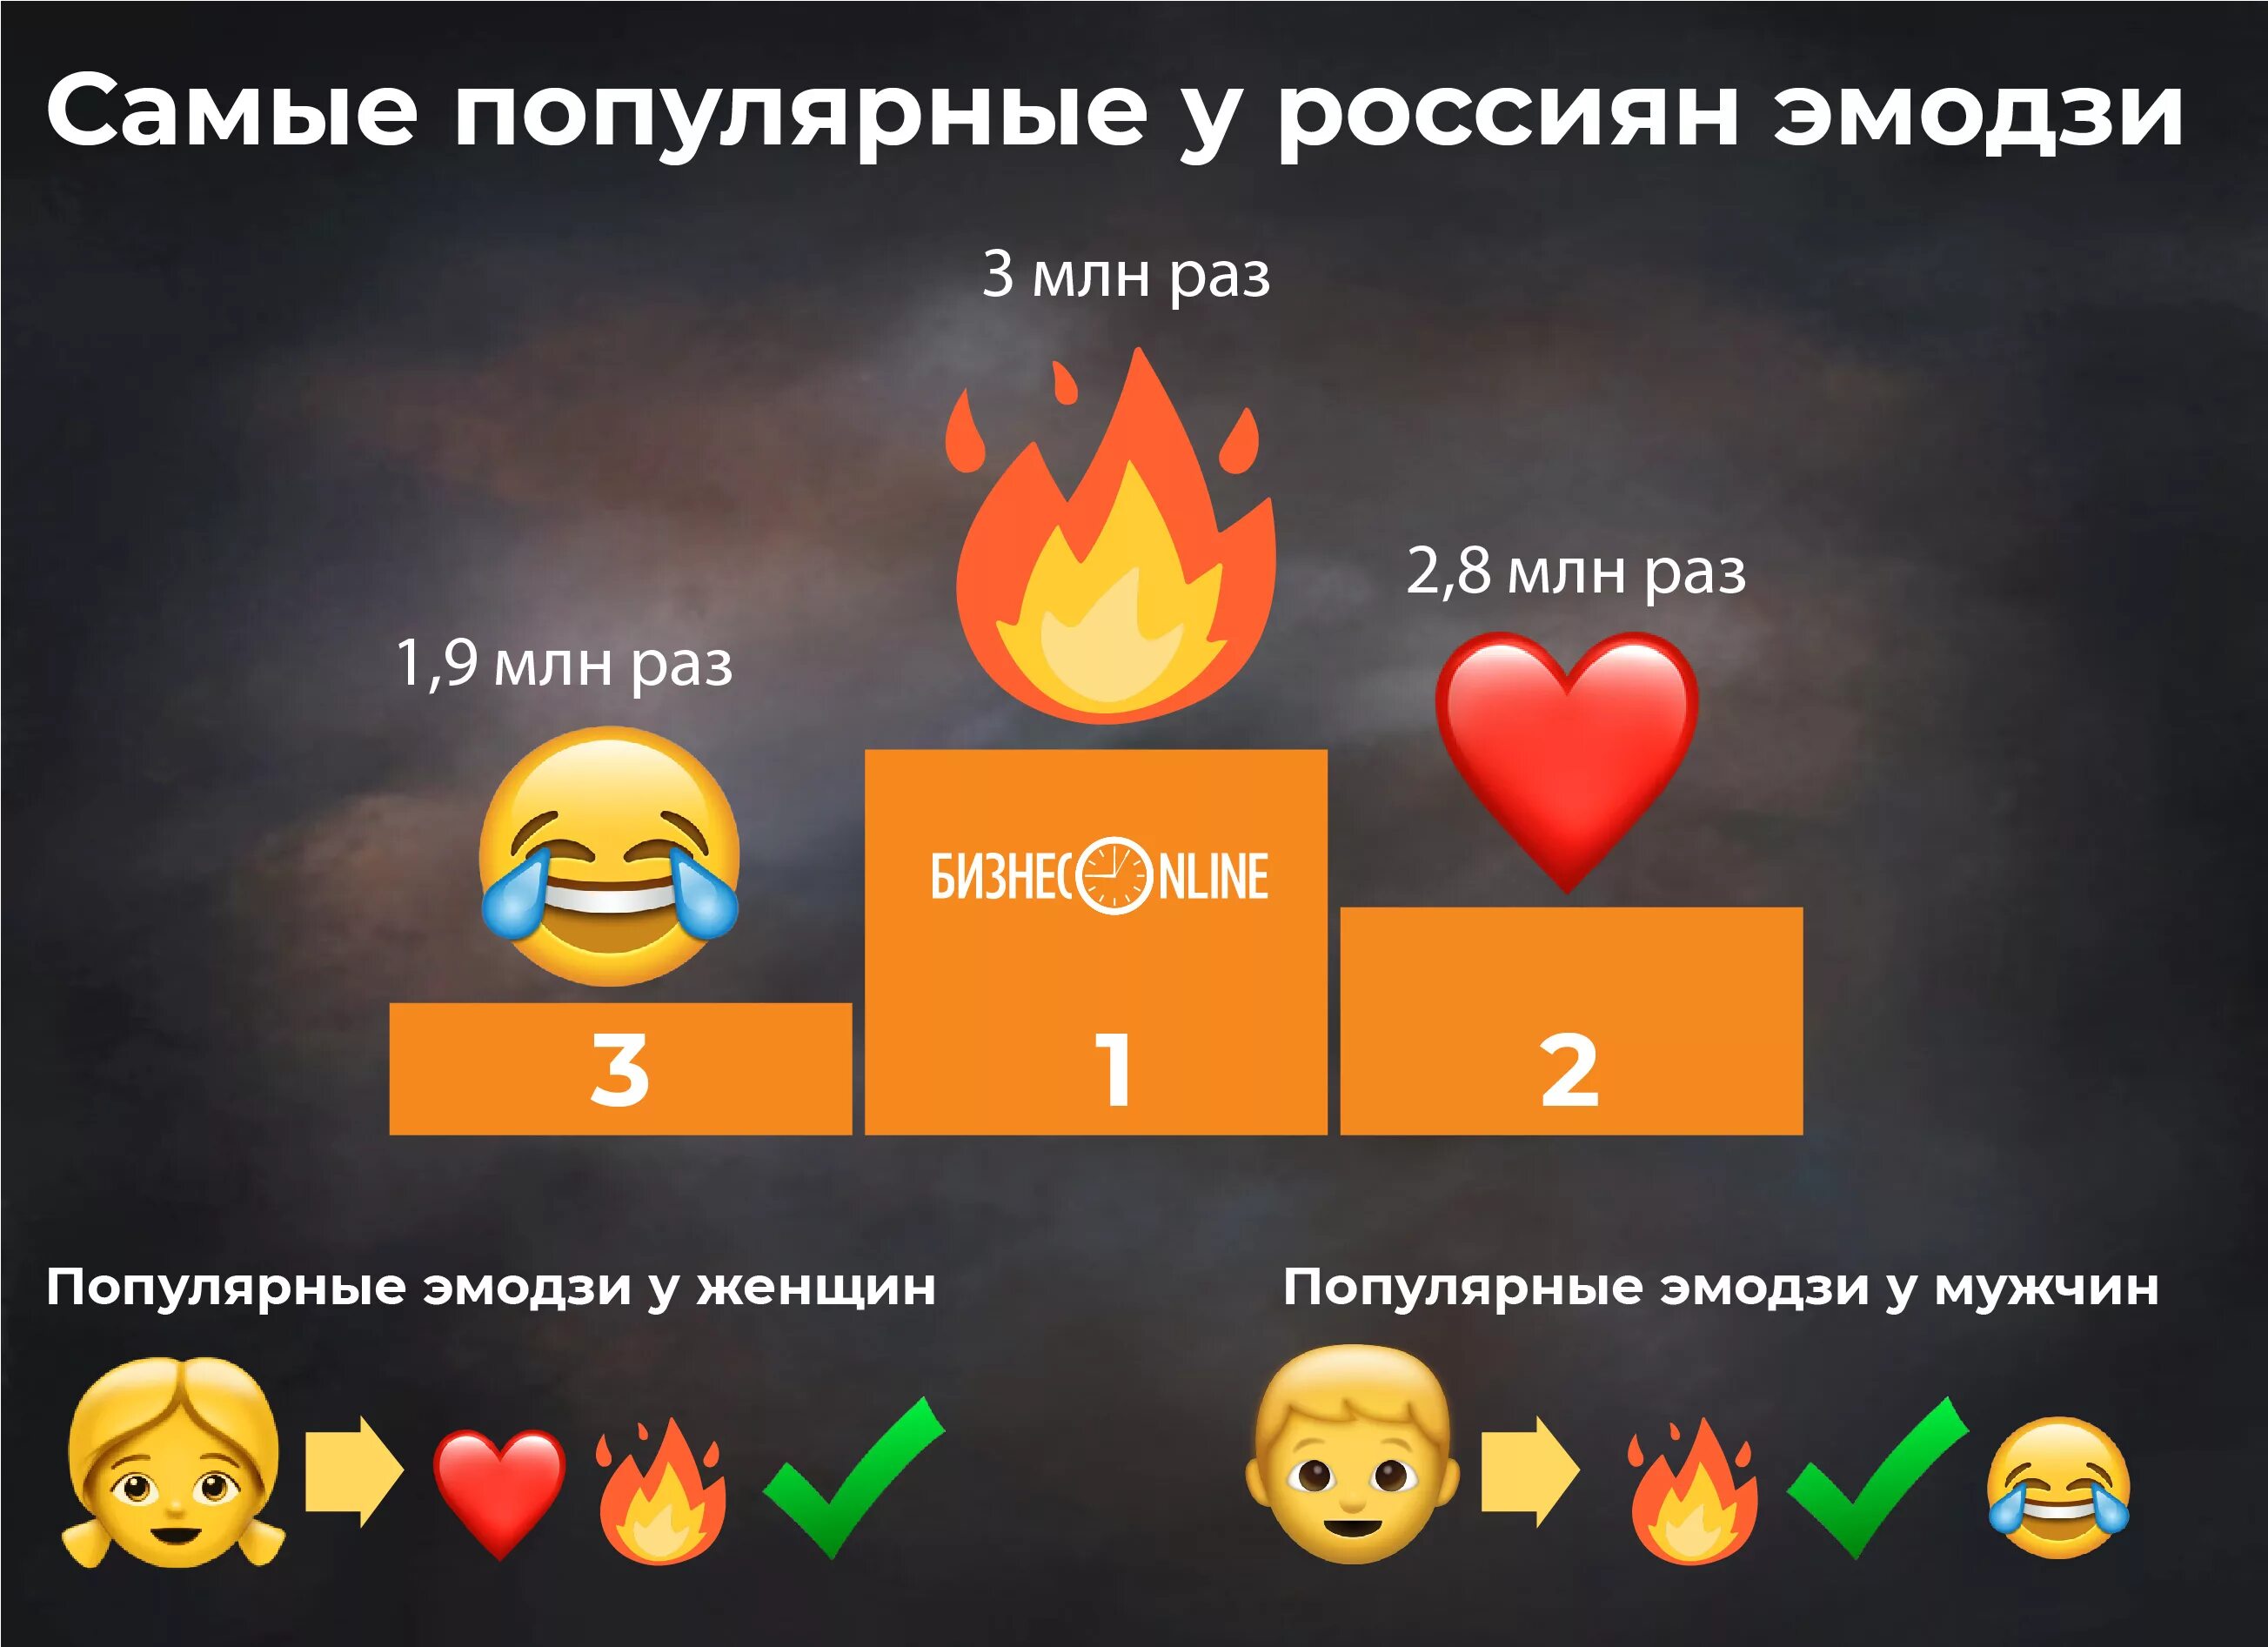 Самые популярные эмодзи. Самый популярный смайлик в мире. Самый не популярный ЭМОДЖИ. Самый популярный смайлик в России.